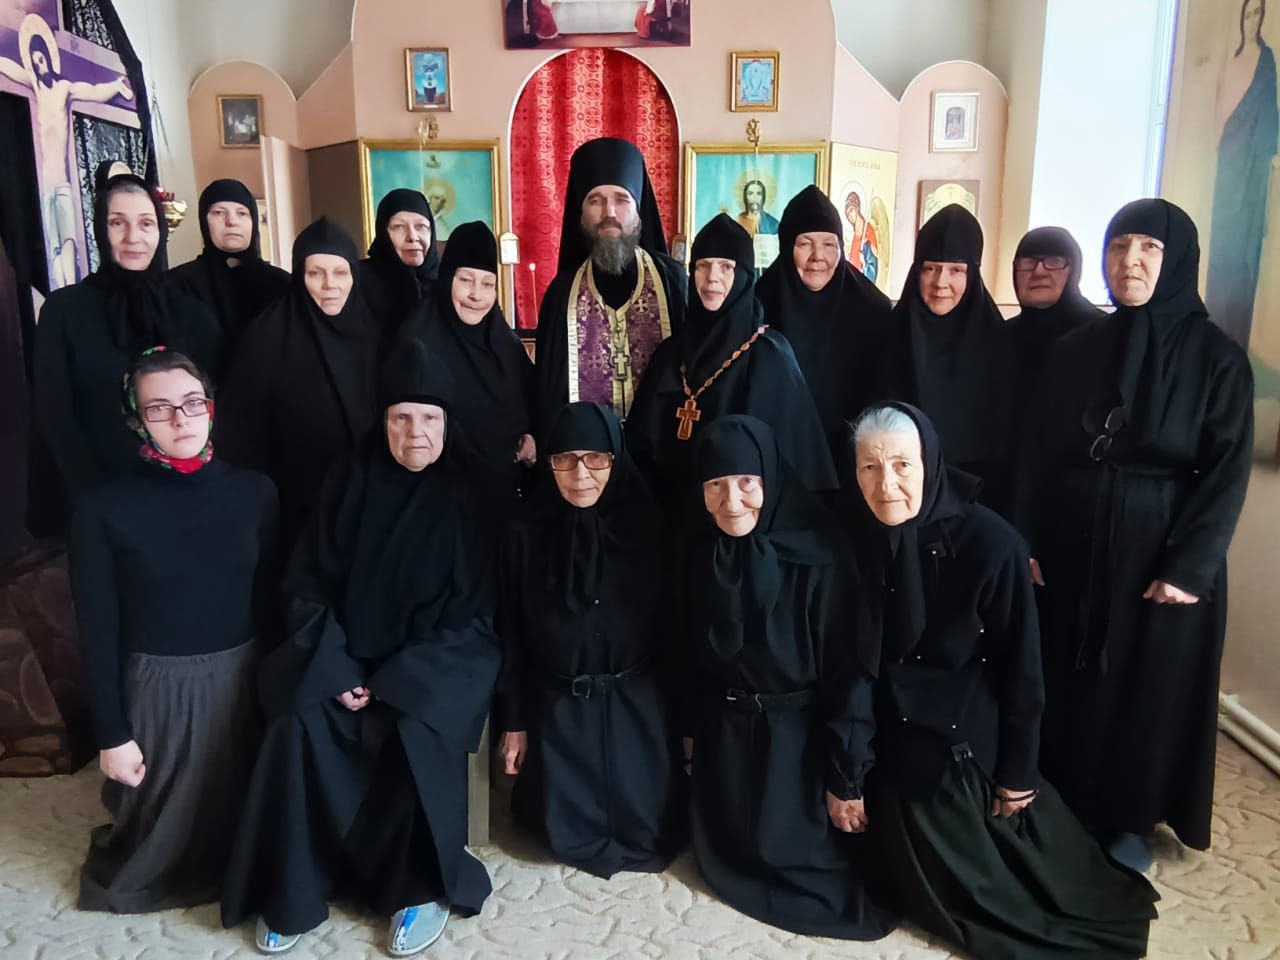 Благочинный монастырей Владивостокской епархии совершил облачение насельниц монастыря Казанской иконы Божией Матери в послушнические одежды